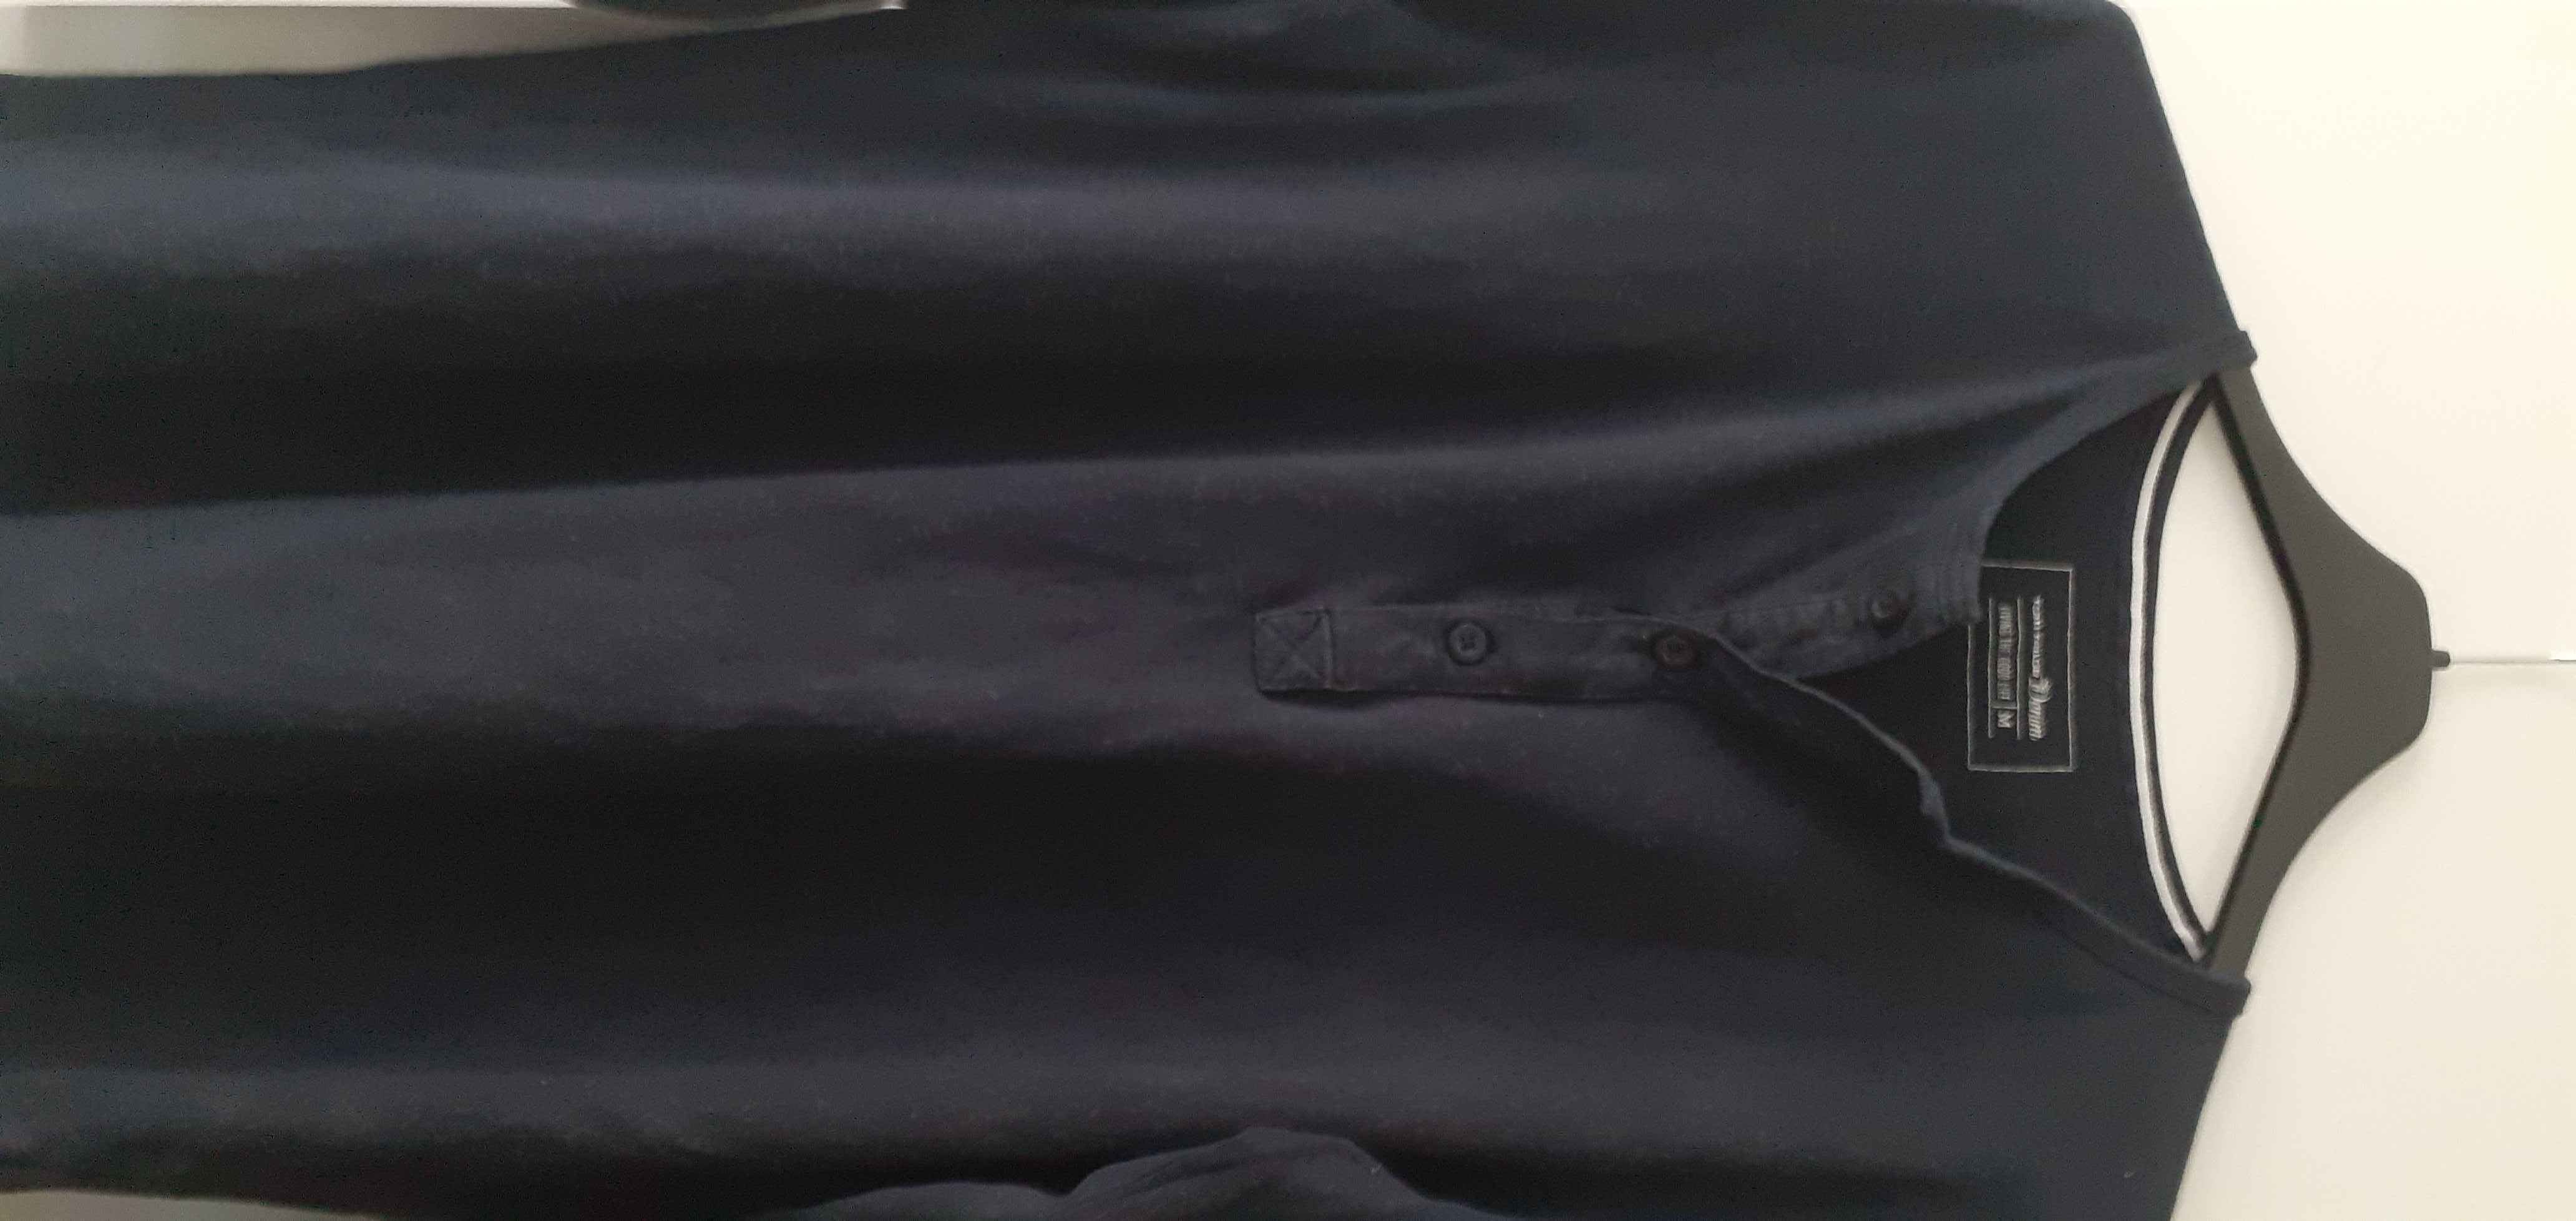 Granatowa bluzka chłopięca roz M firmy Tom Tailor